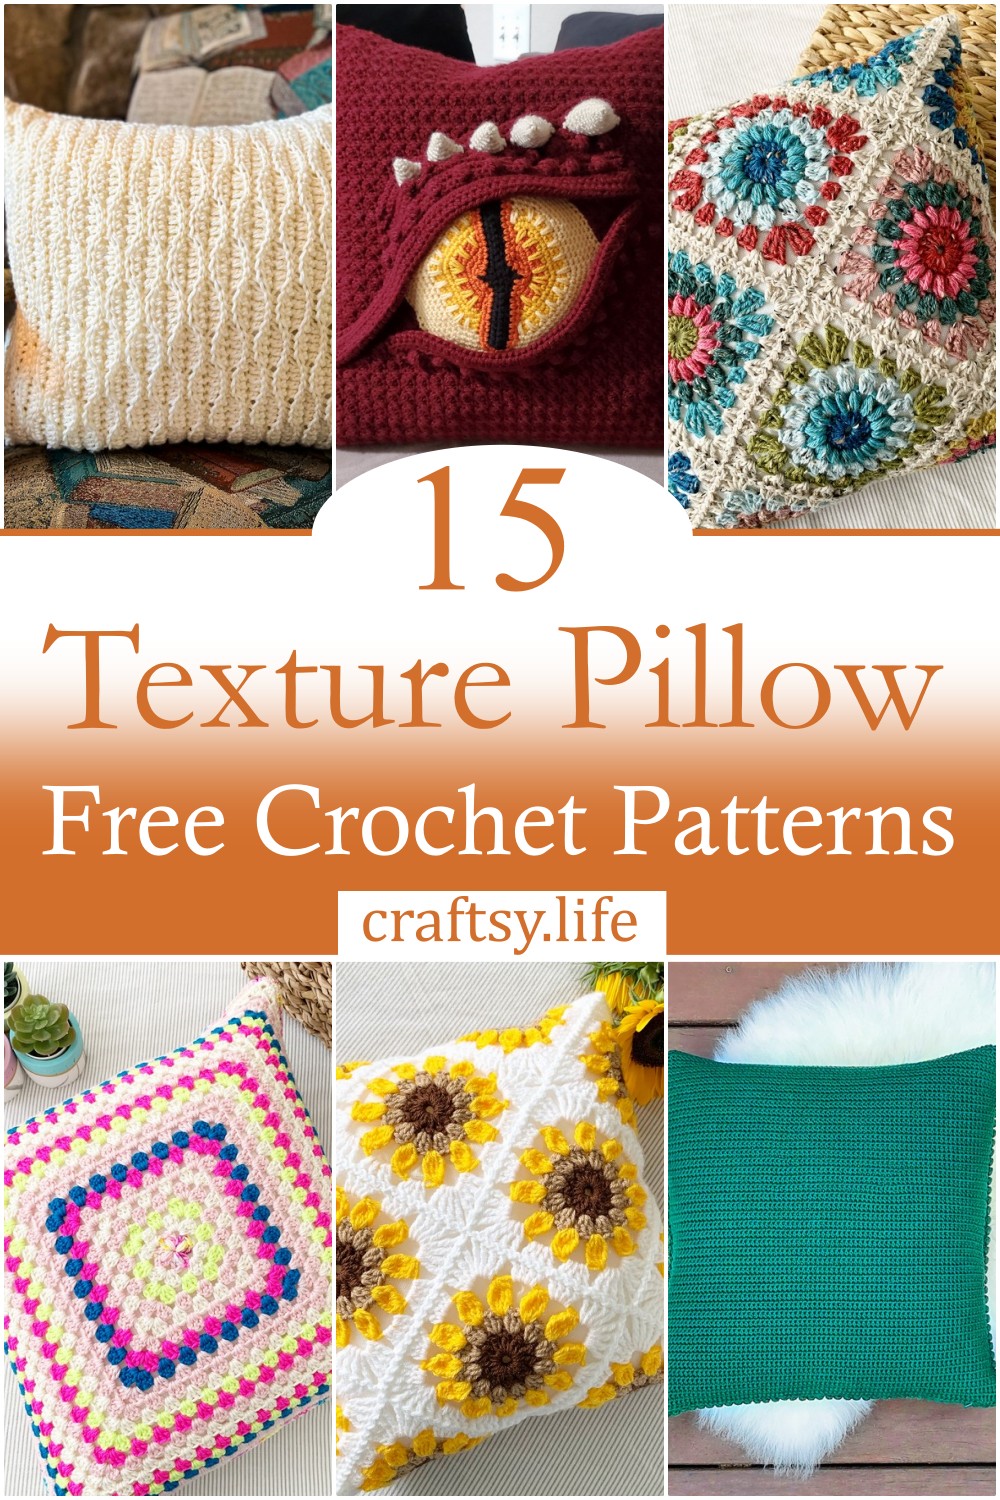 Free Crochet Texture Pillow Patterns 1